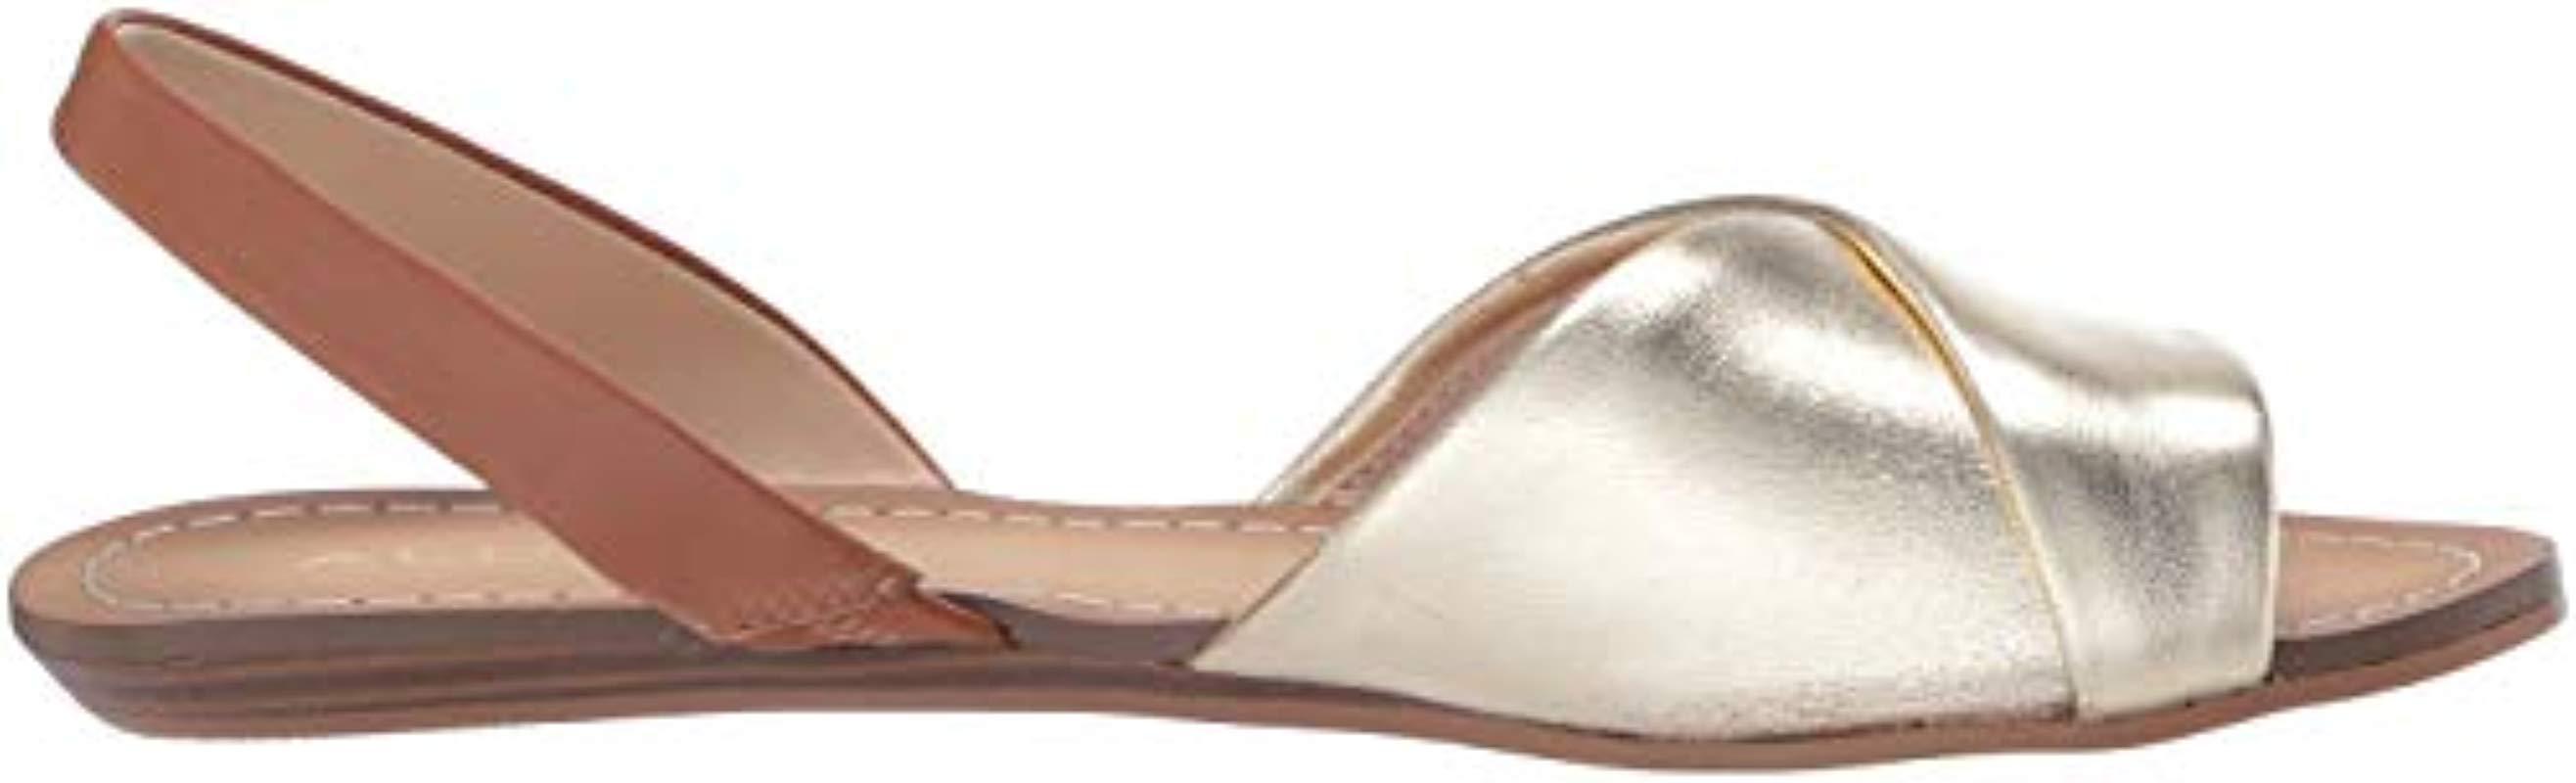 aldo roedien sandals